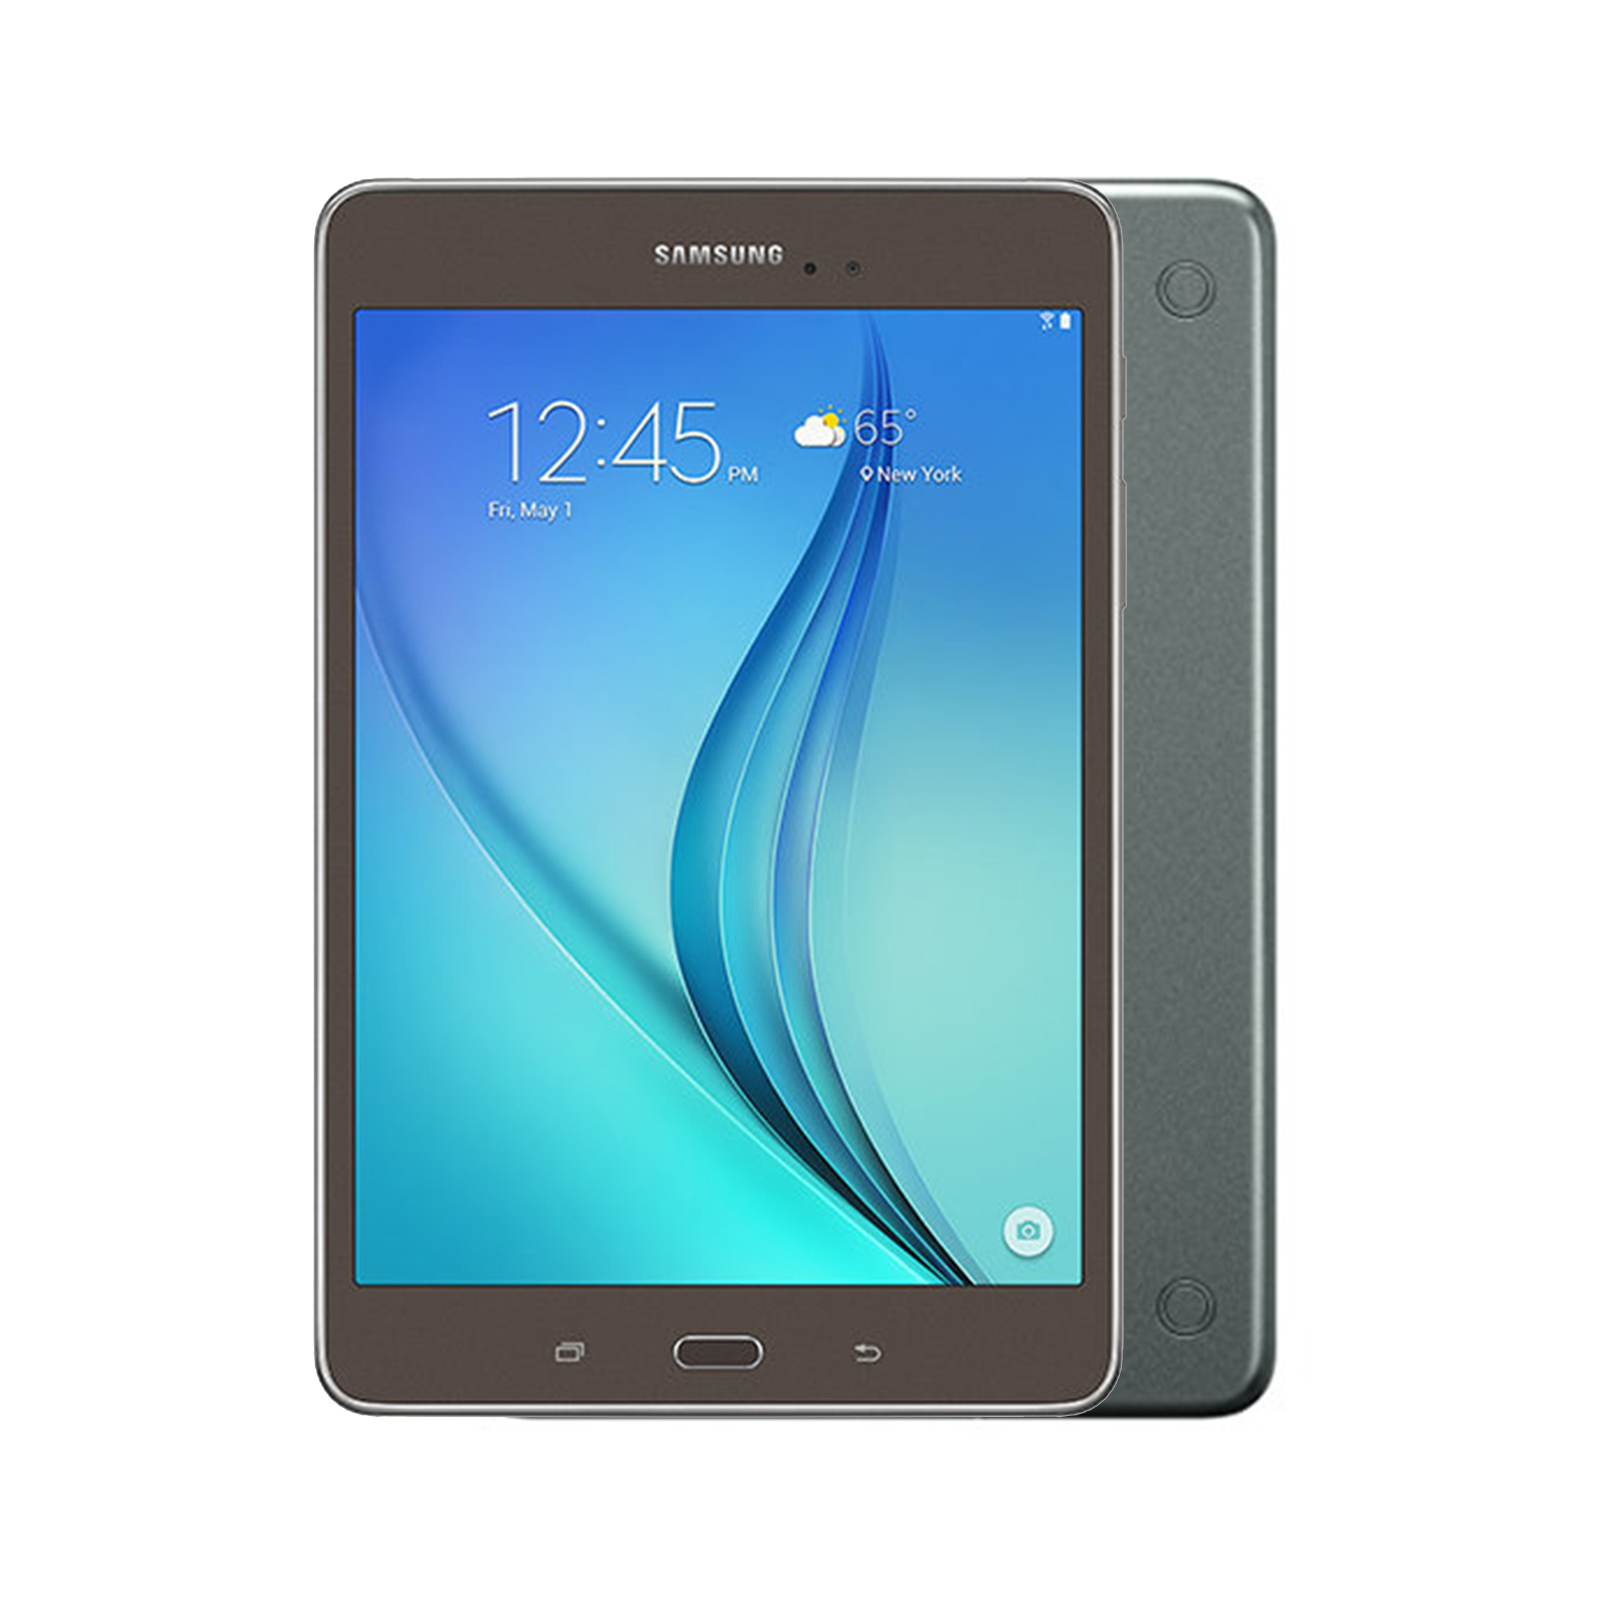 Samsung Galaxy Tab A 8.0 Wi-Fi + Cellular [16GB] [Smoky Titanium] [Excellent]